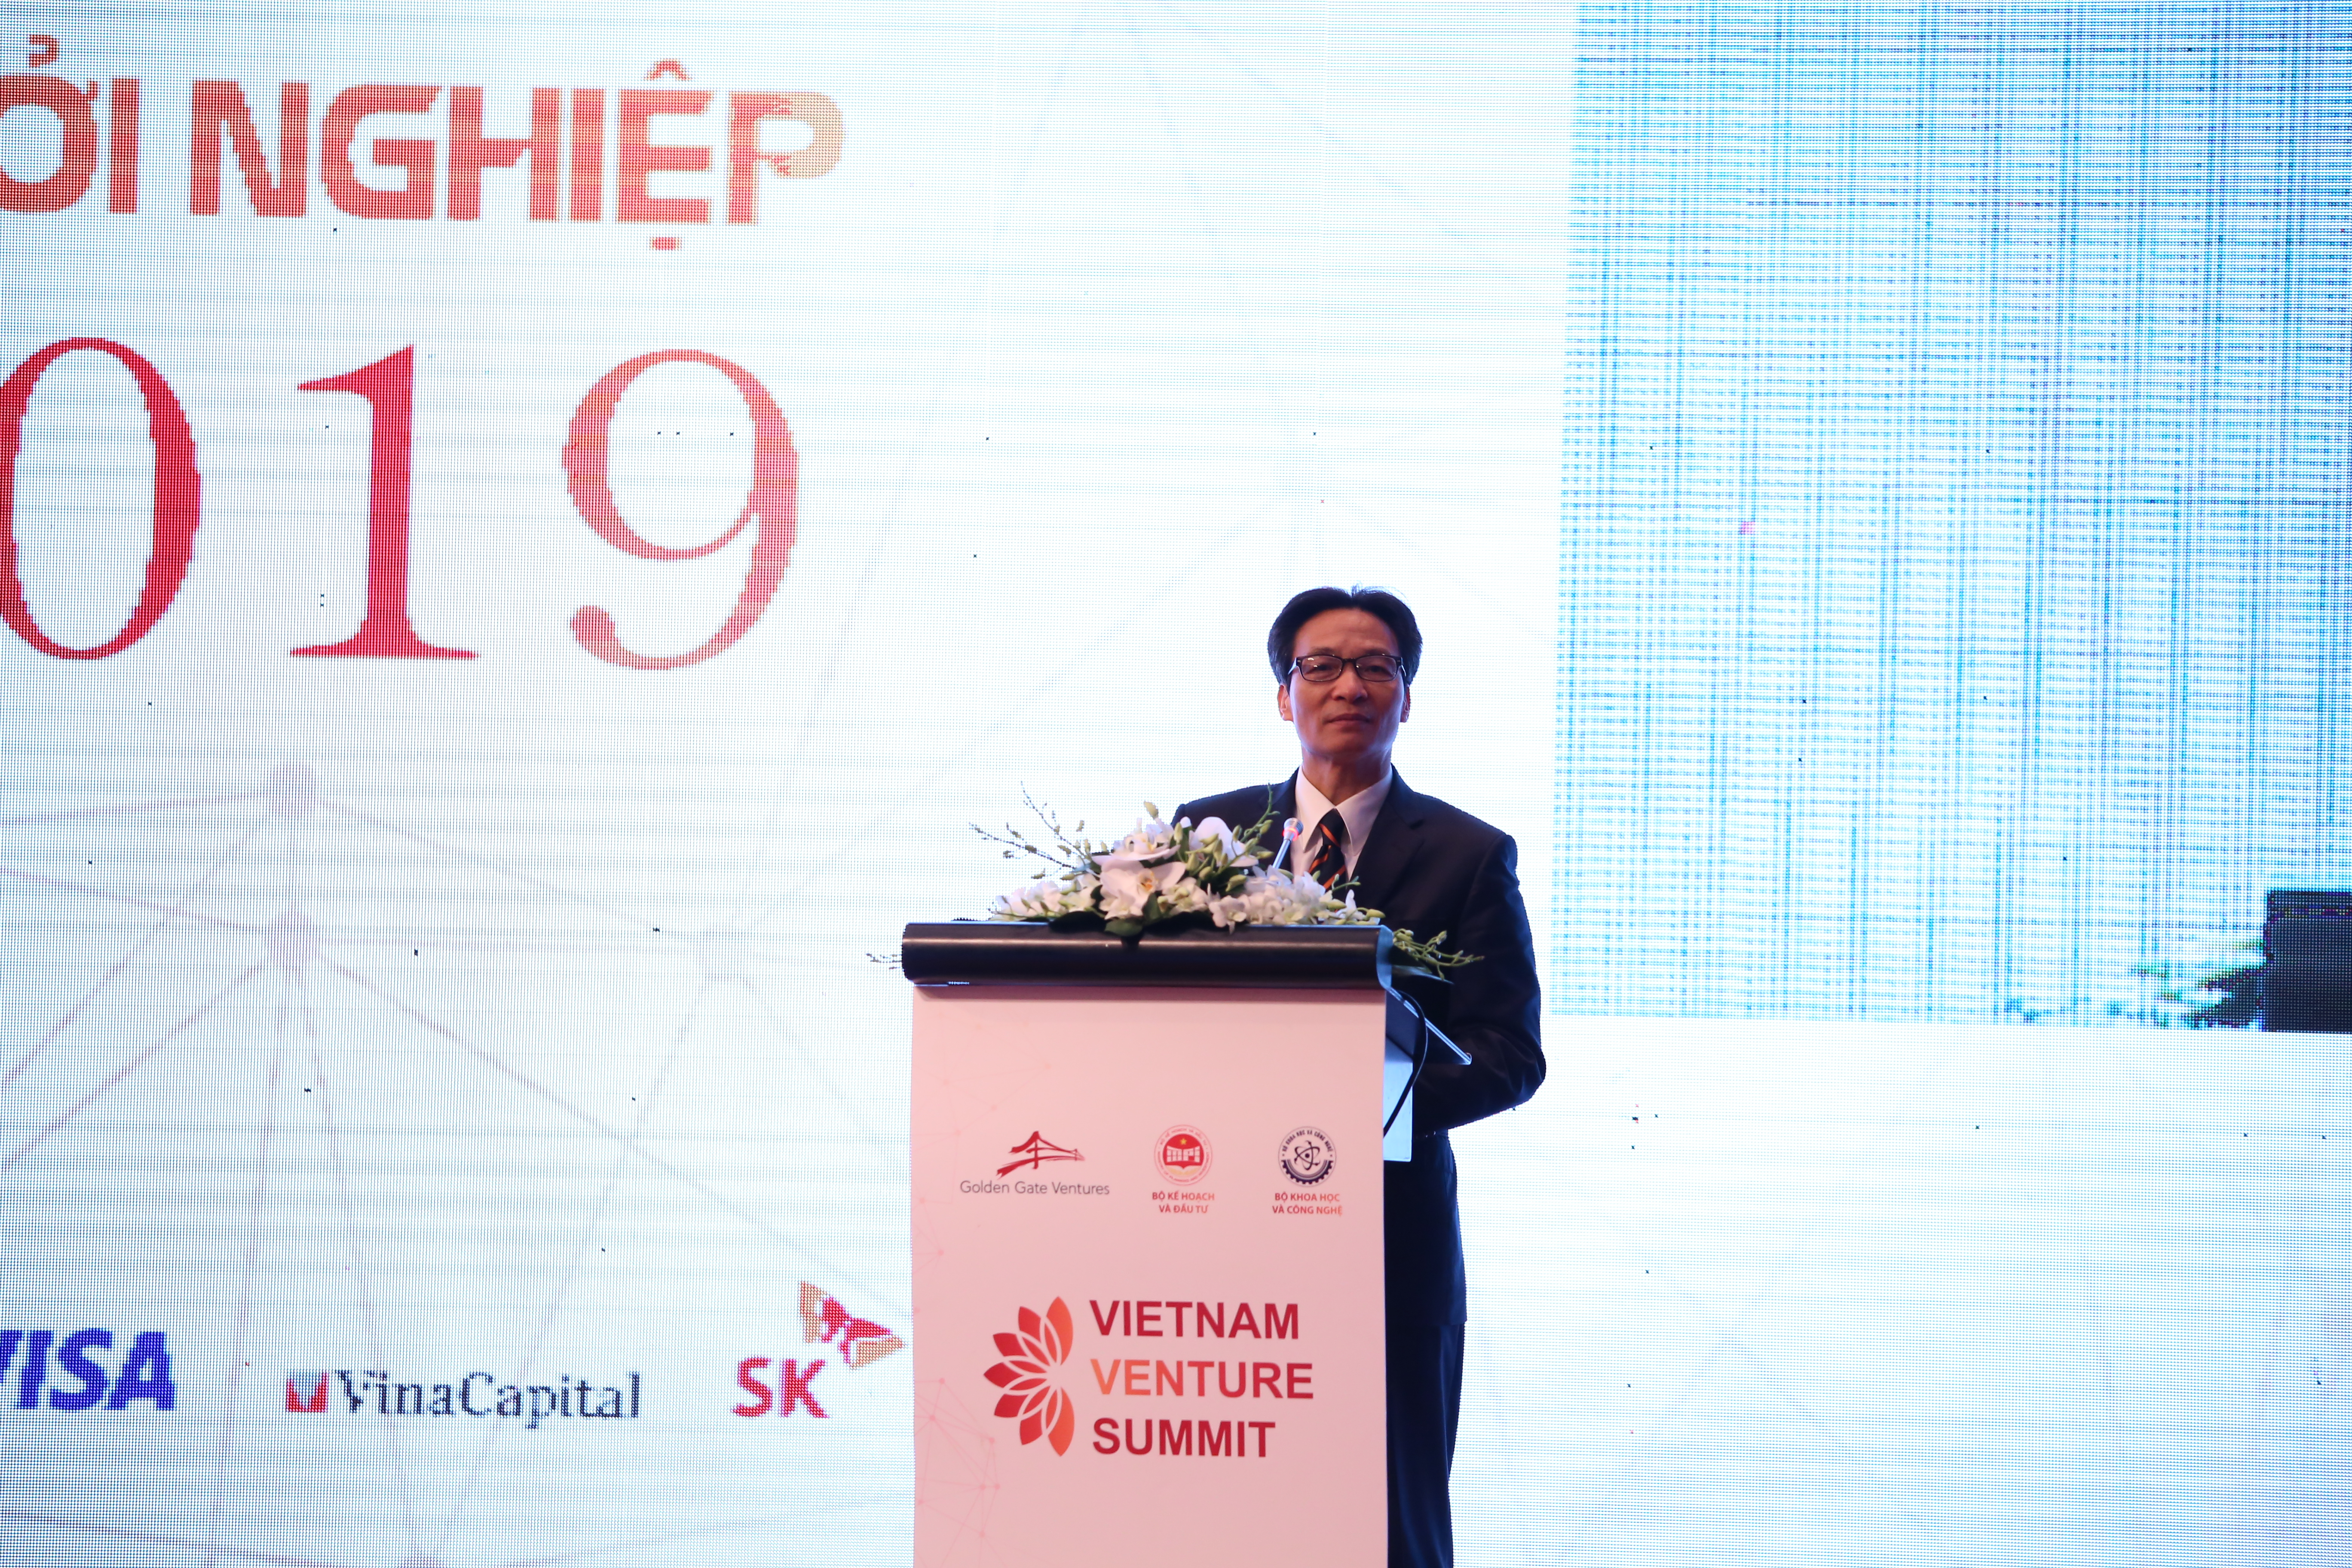 Phó Thủ tướng Vũ Đức Đam nhấn mạnh cần phải duy trì và làm tốt hơn việc tạo môi trường hỗ trợ hệ sinh thái khởi nghiệp tại Hội thảo Vietnam Venture Summit 2019. Ảnh: Ngô Hà/KHPT